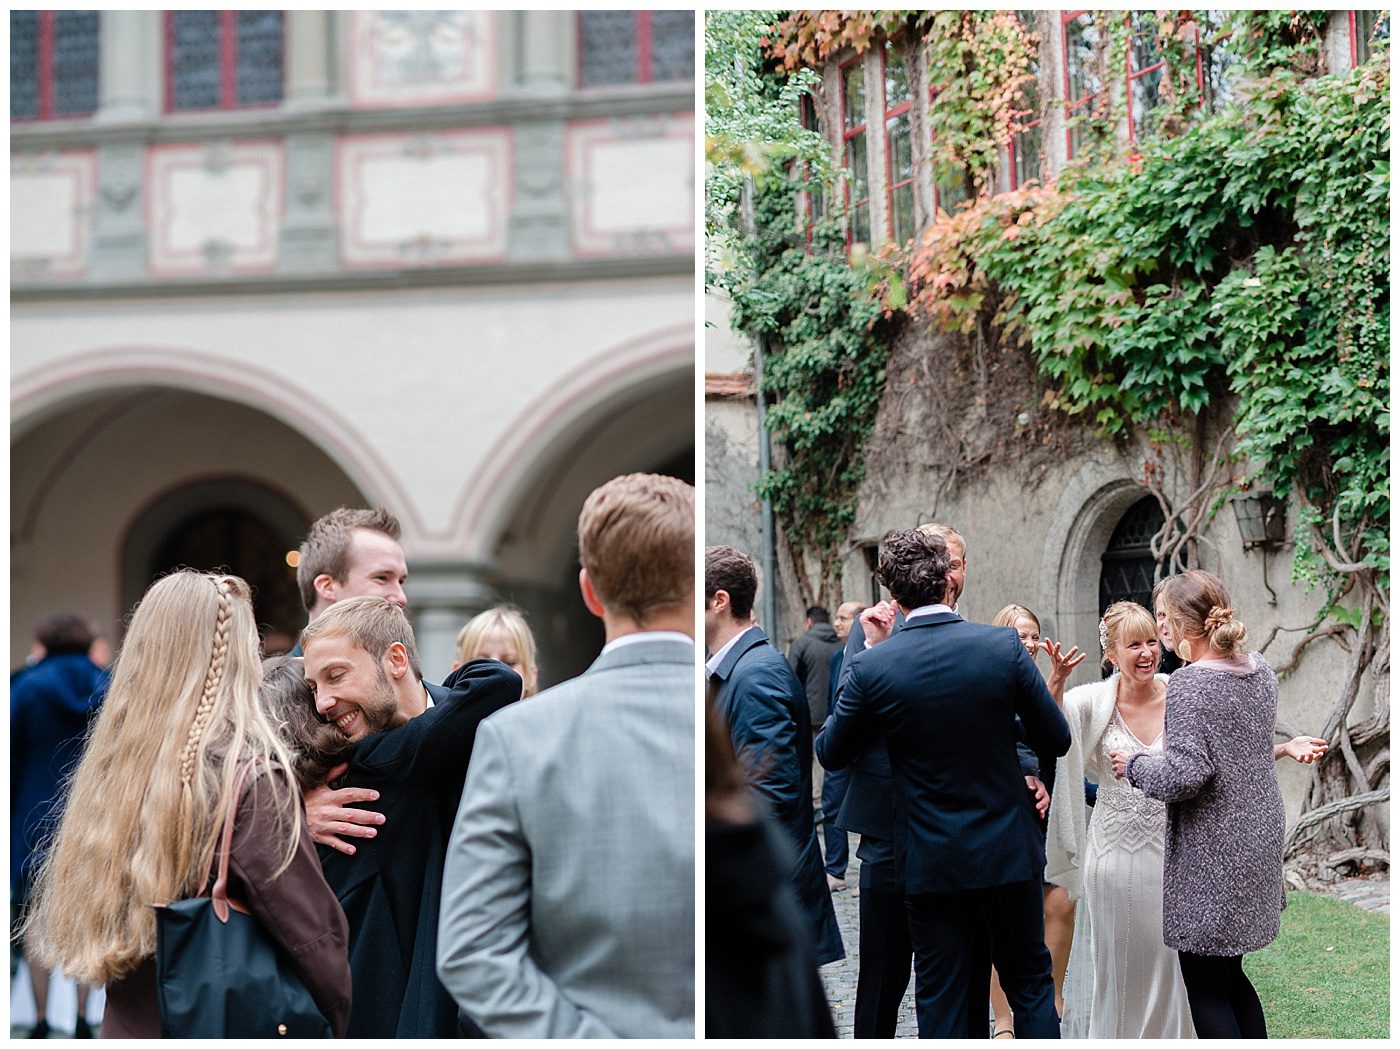 Hochzeitsfotograf vom Bodensee 4 Hochzeit in Konstanz, im historischen Rathaus